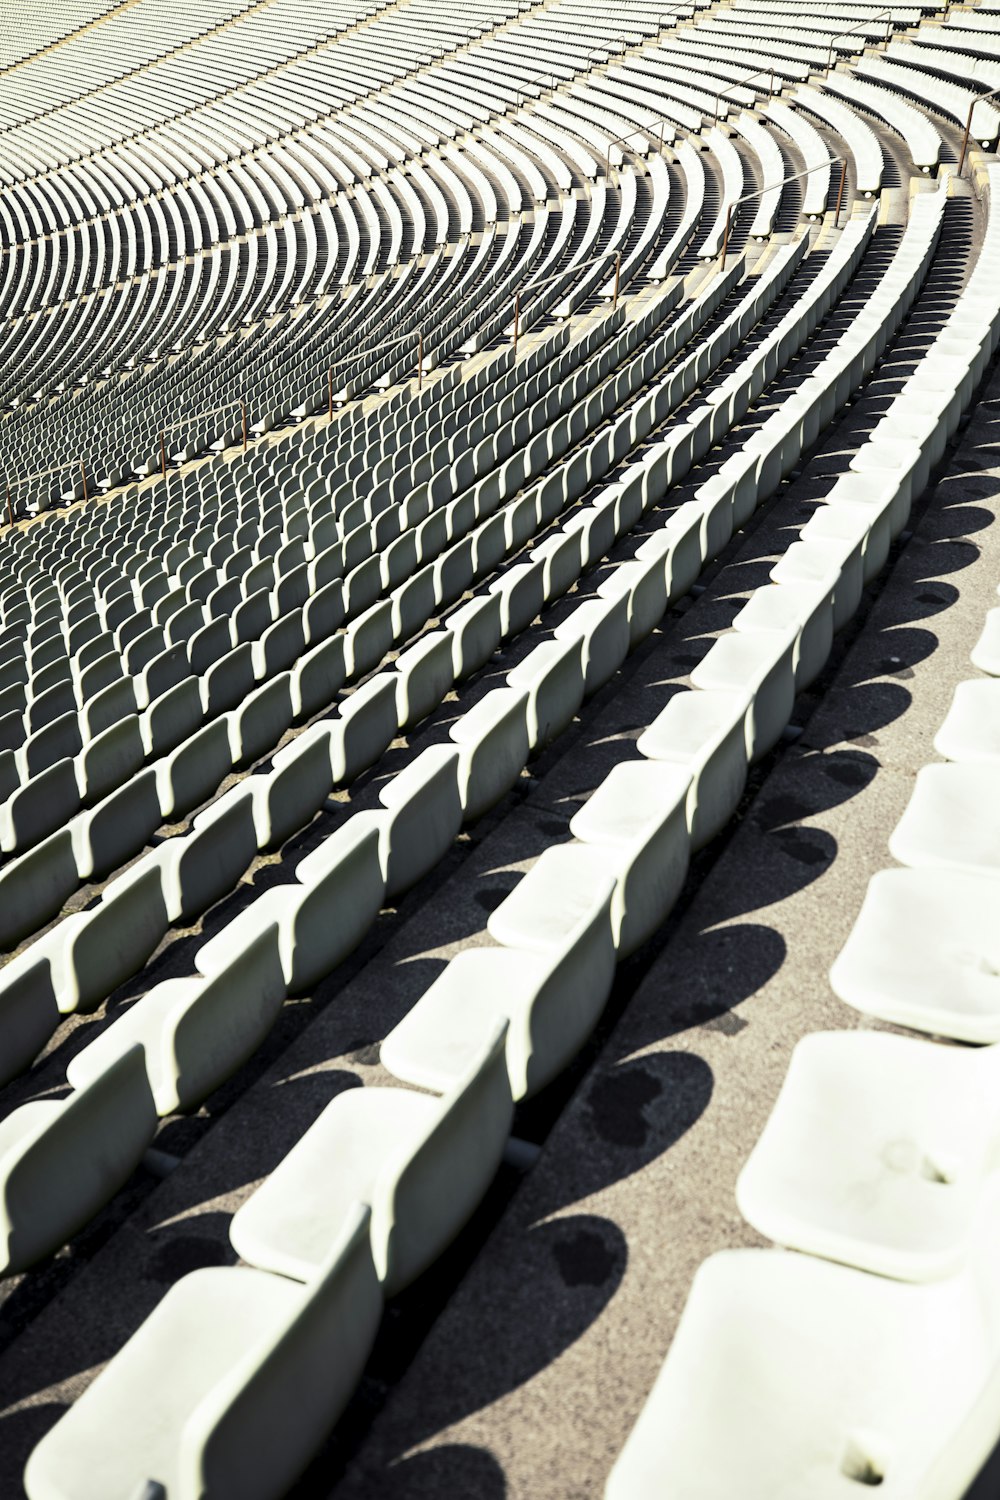 スタジアムまたはアリーナの白い座席の列